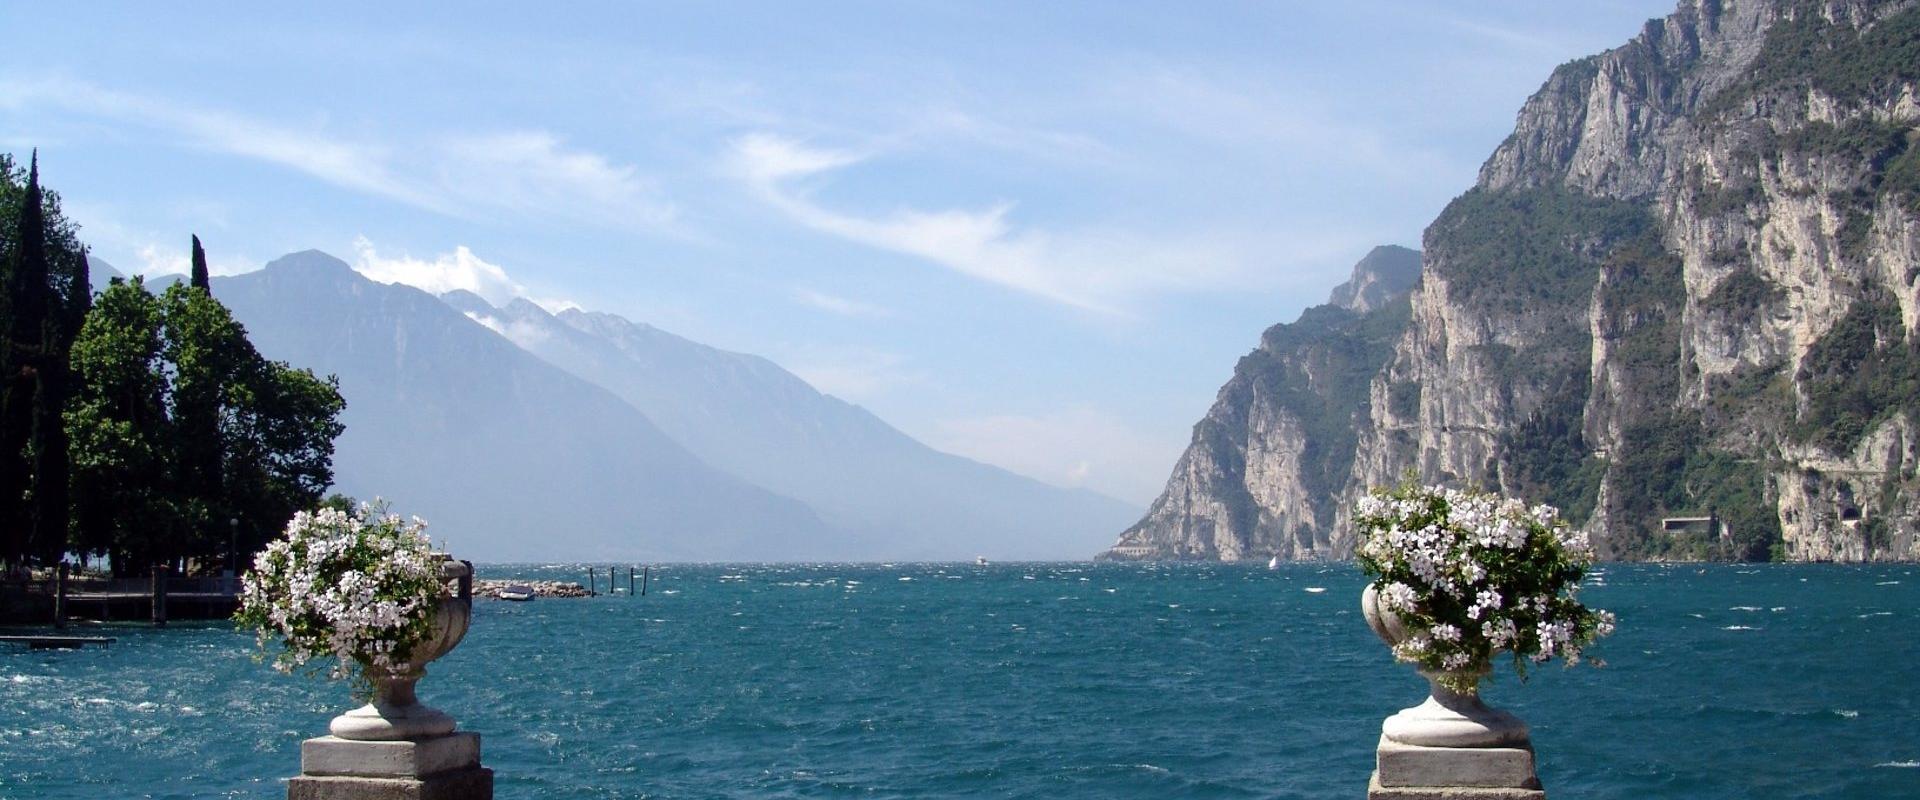 Garda Lake tour